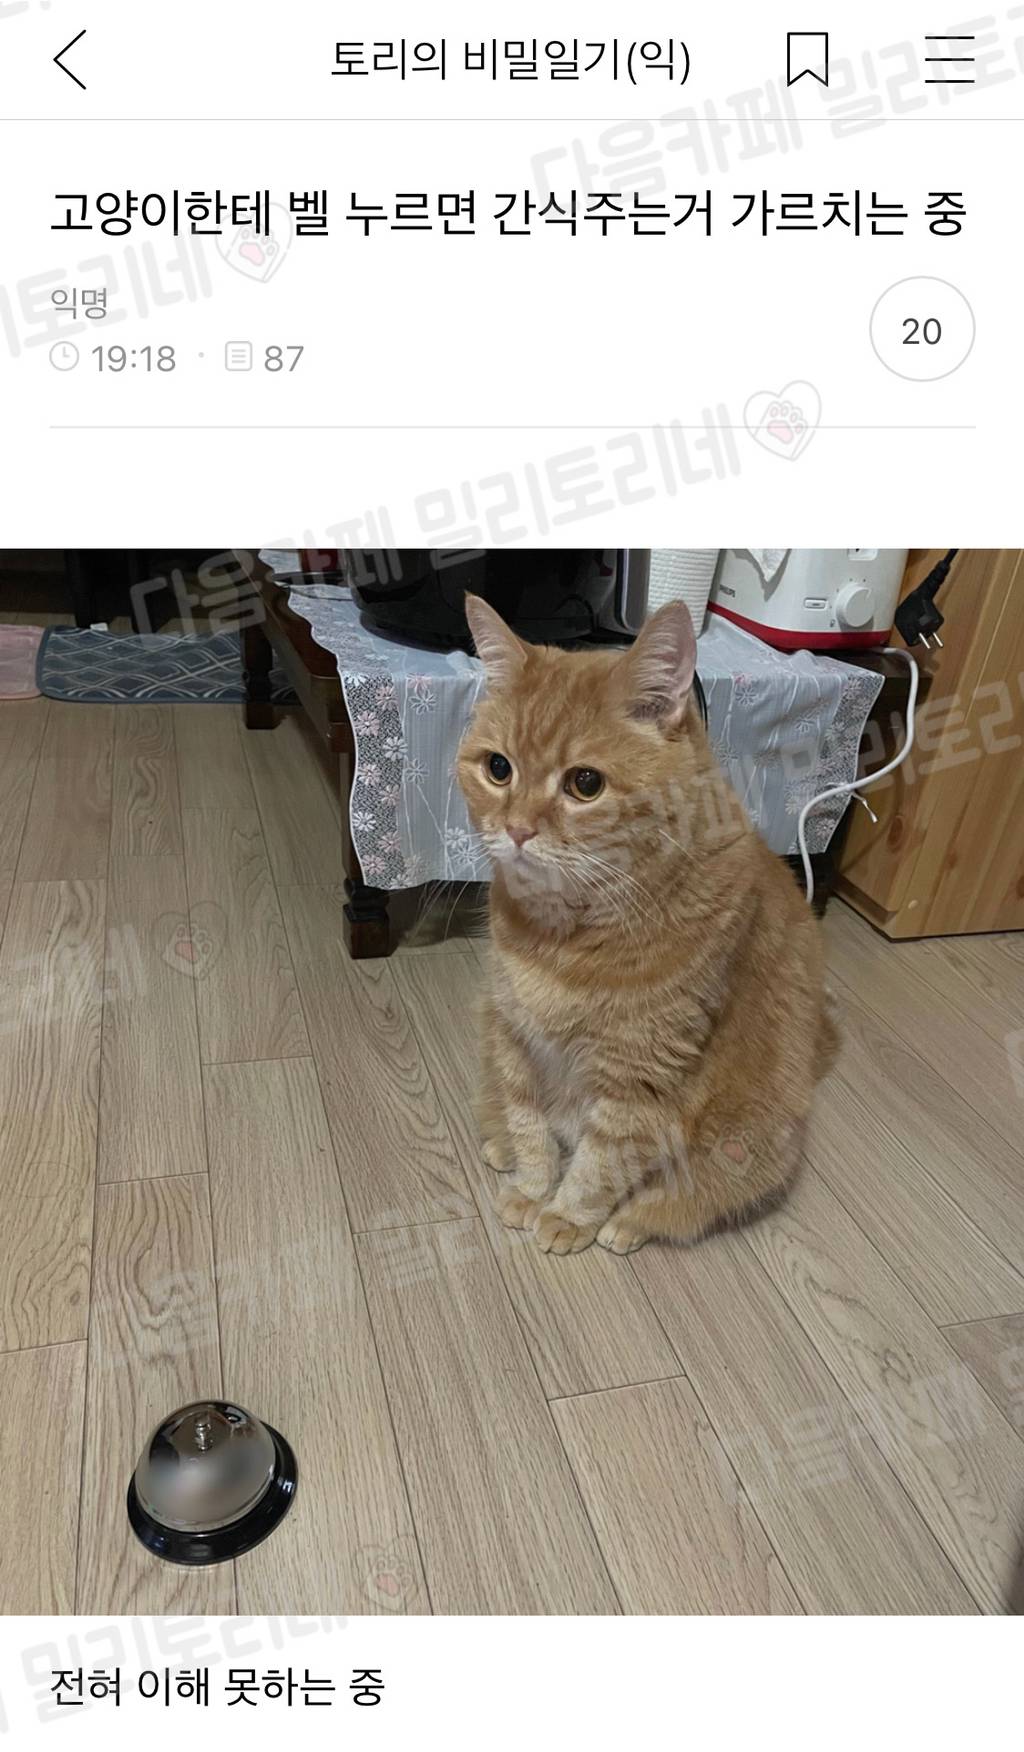 nokbeon.net-고양이한테 벨 누르면 간식주는거 가르치는 중-1번 이미지